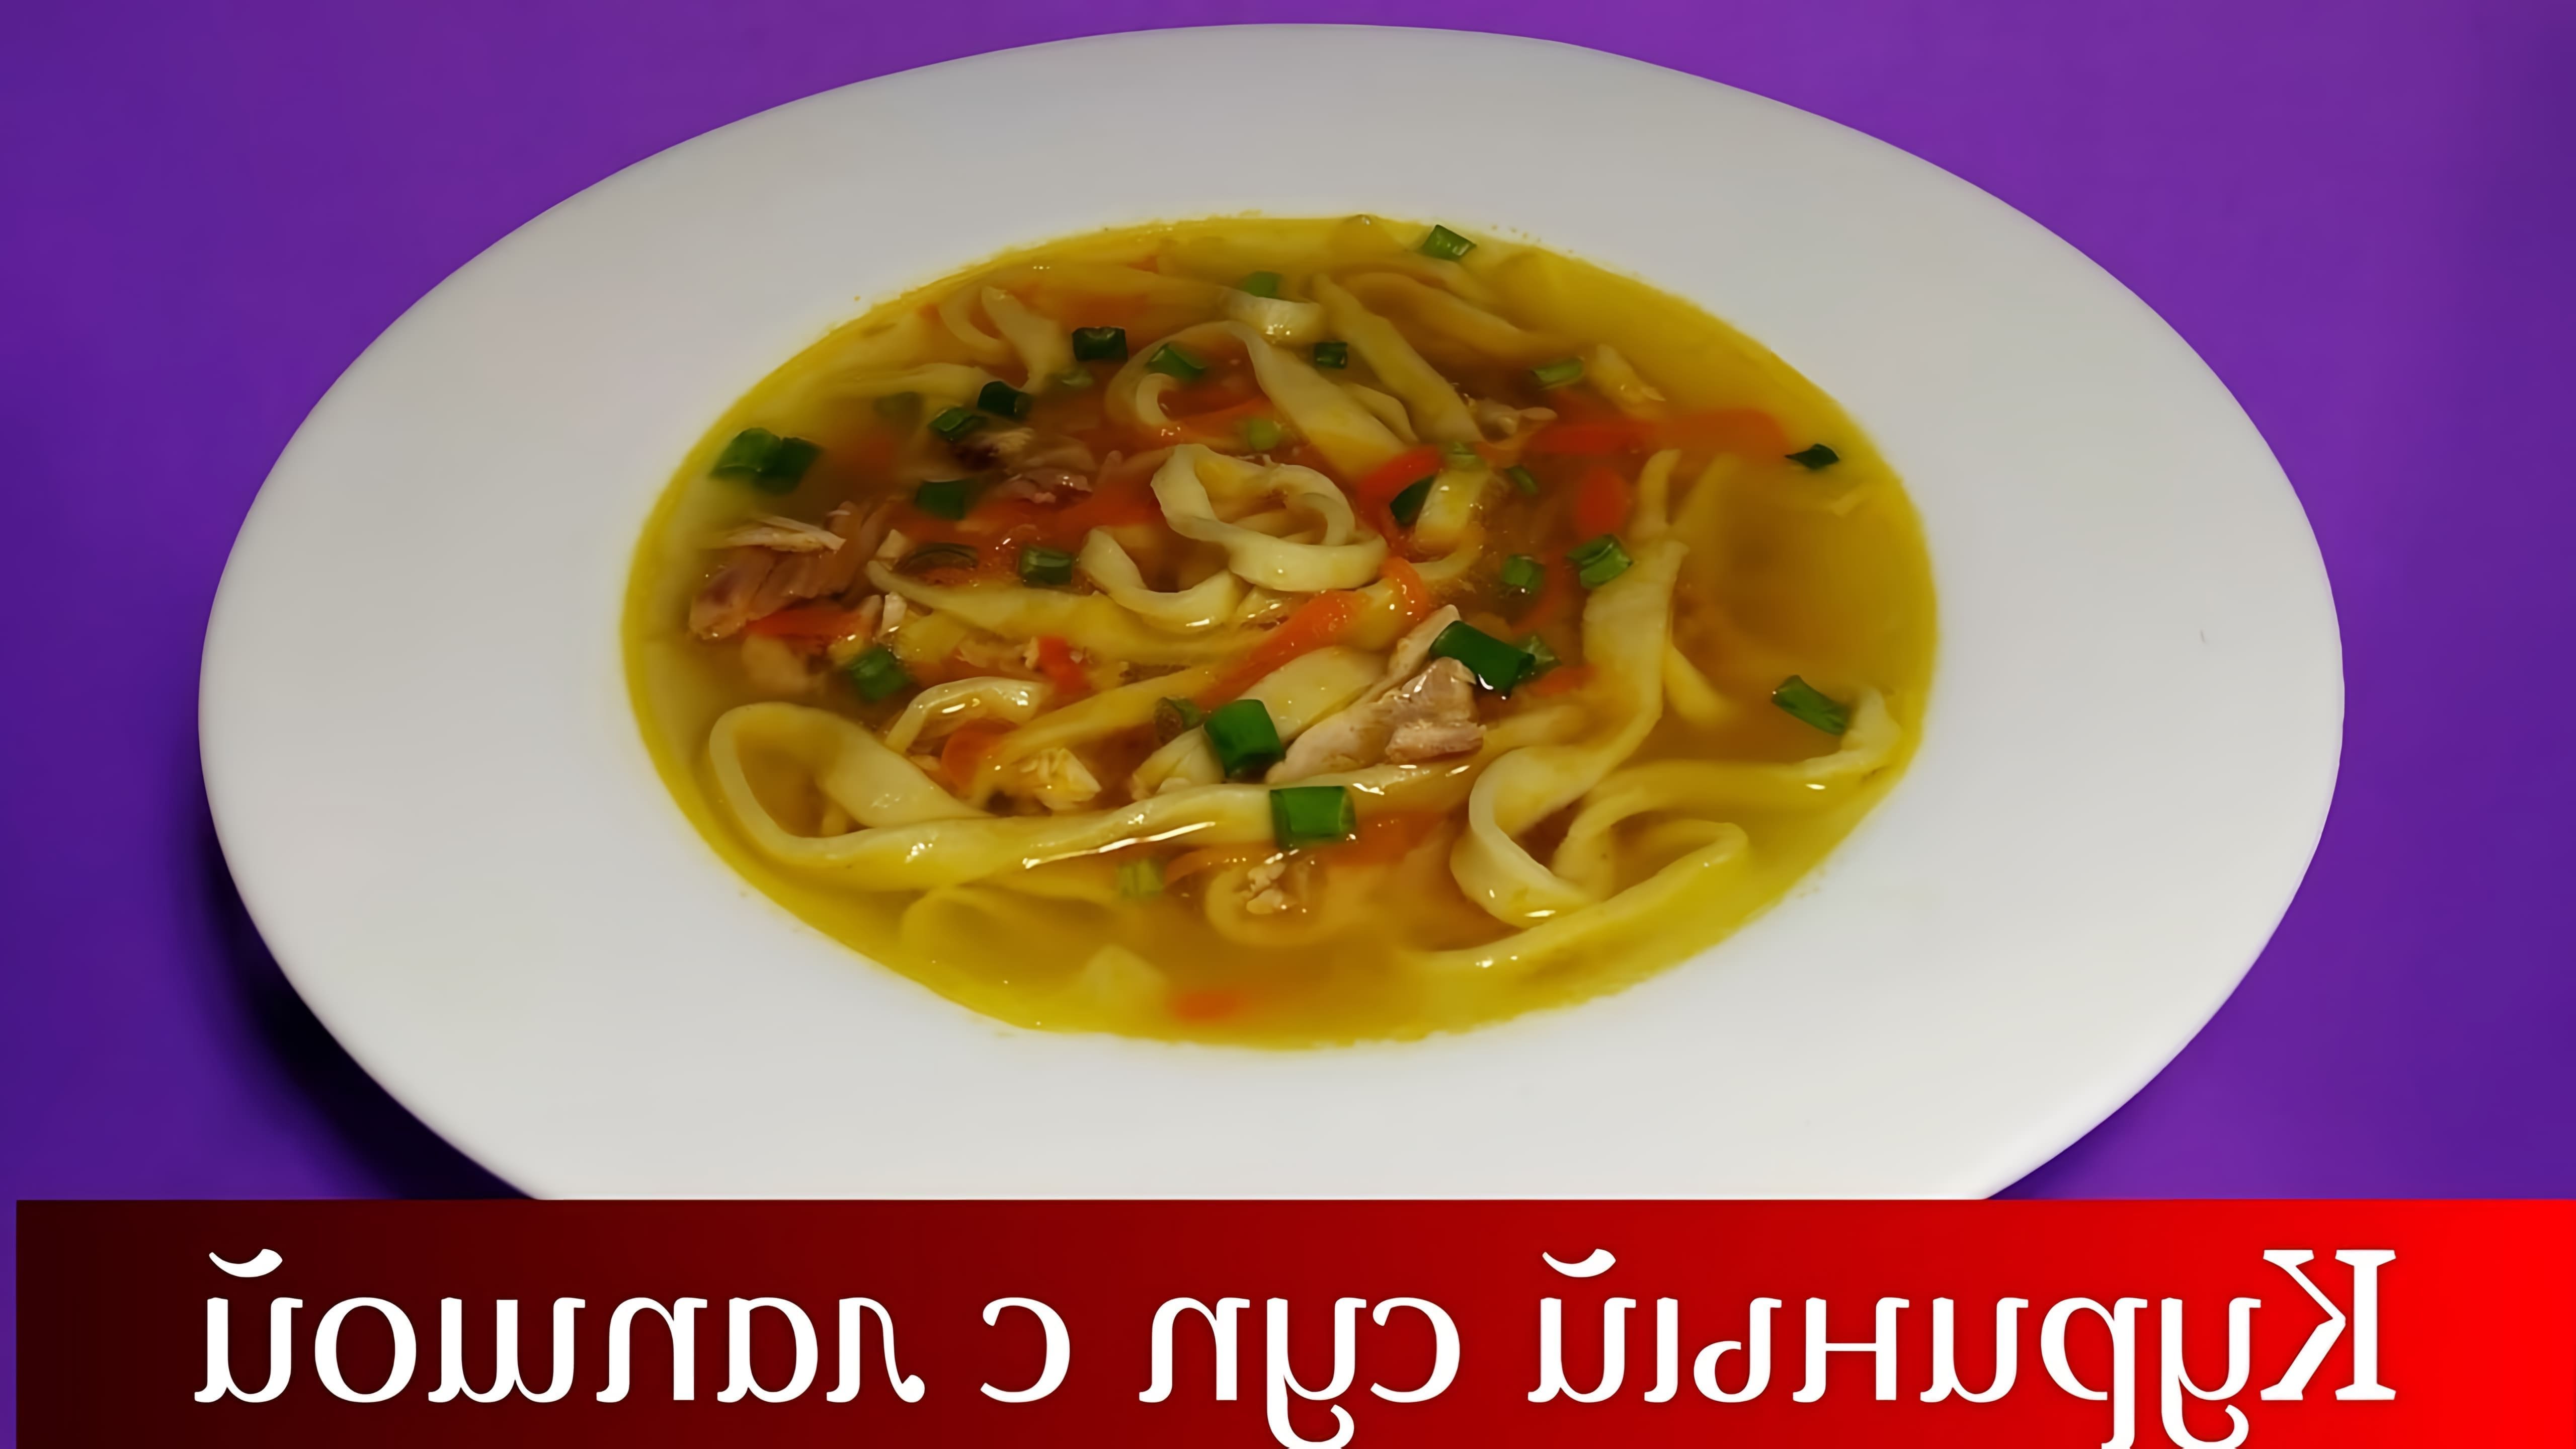 В этом видео демонстрируется процесс приготовления домашнего куриного супа с лапшой